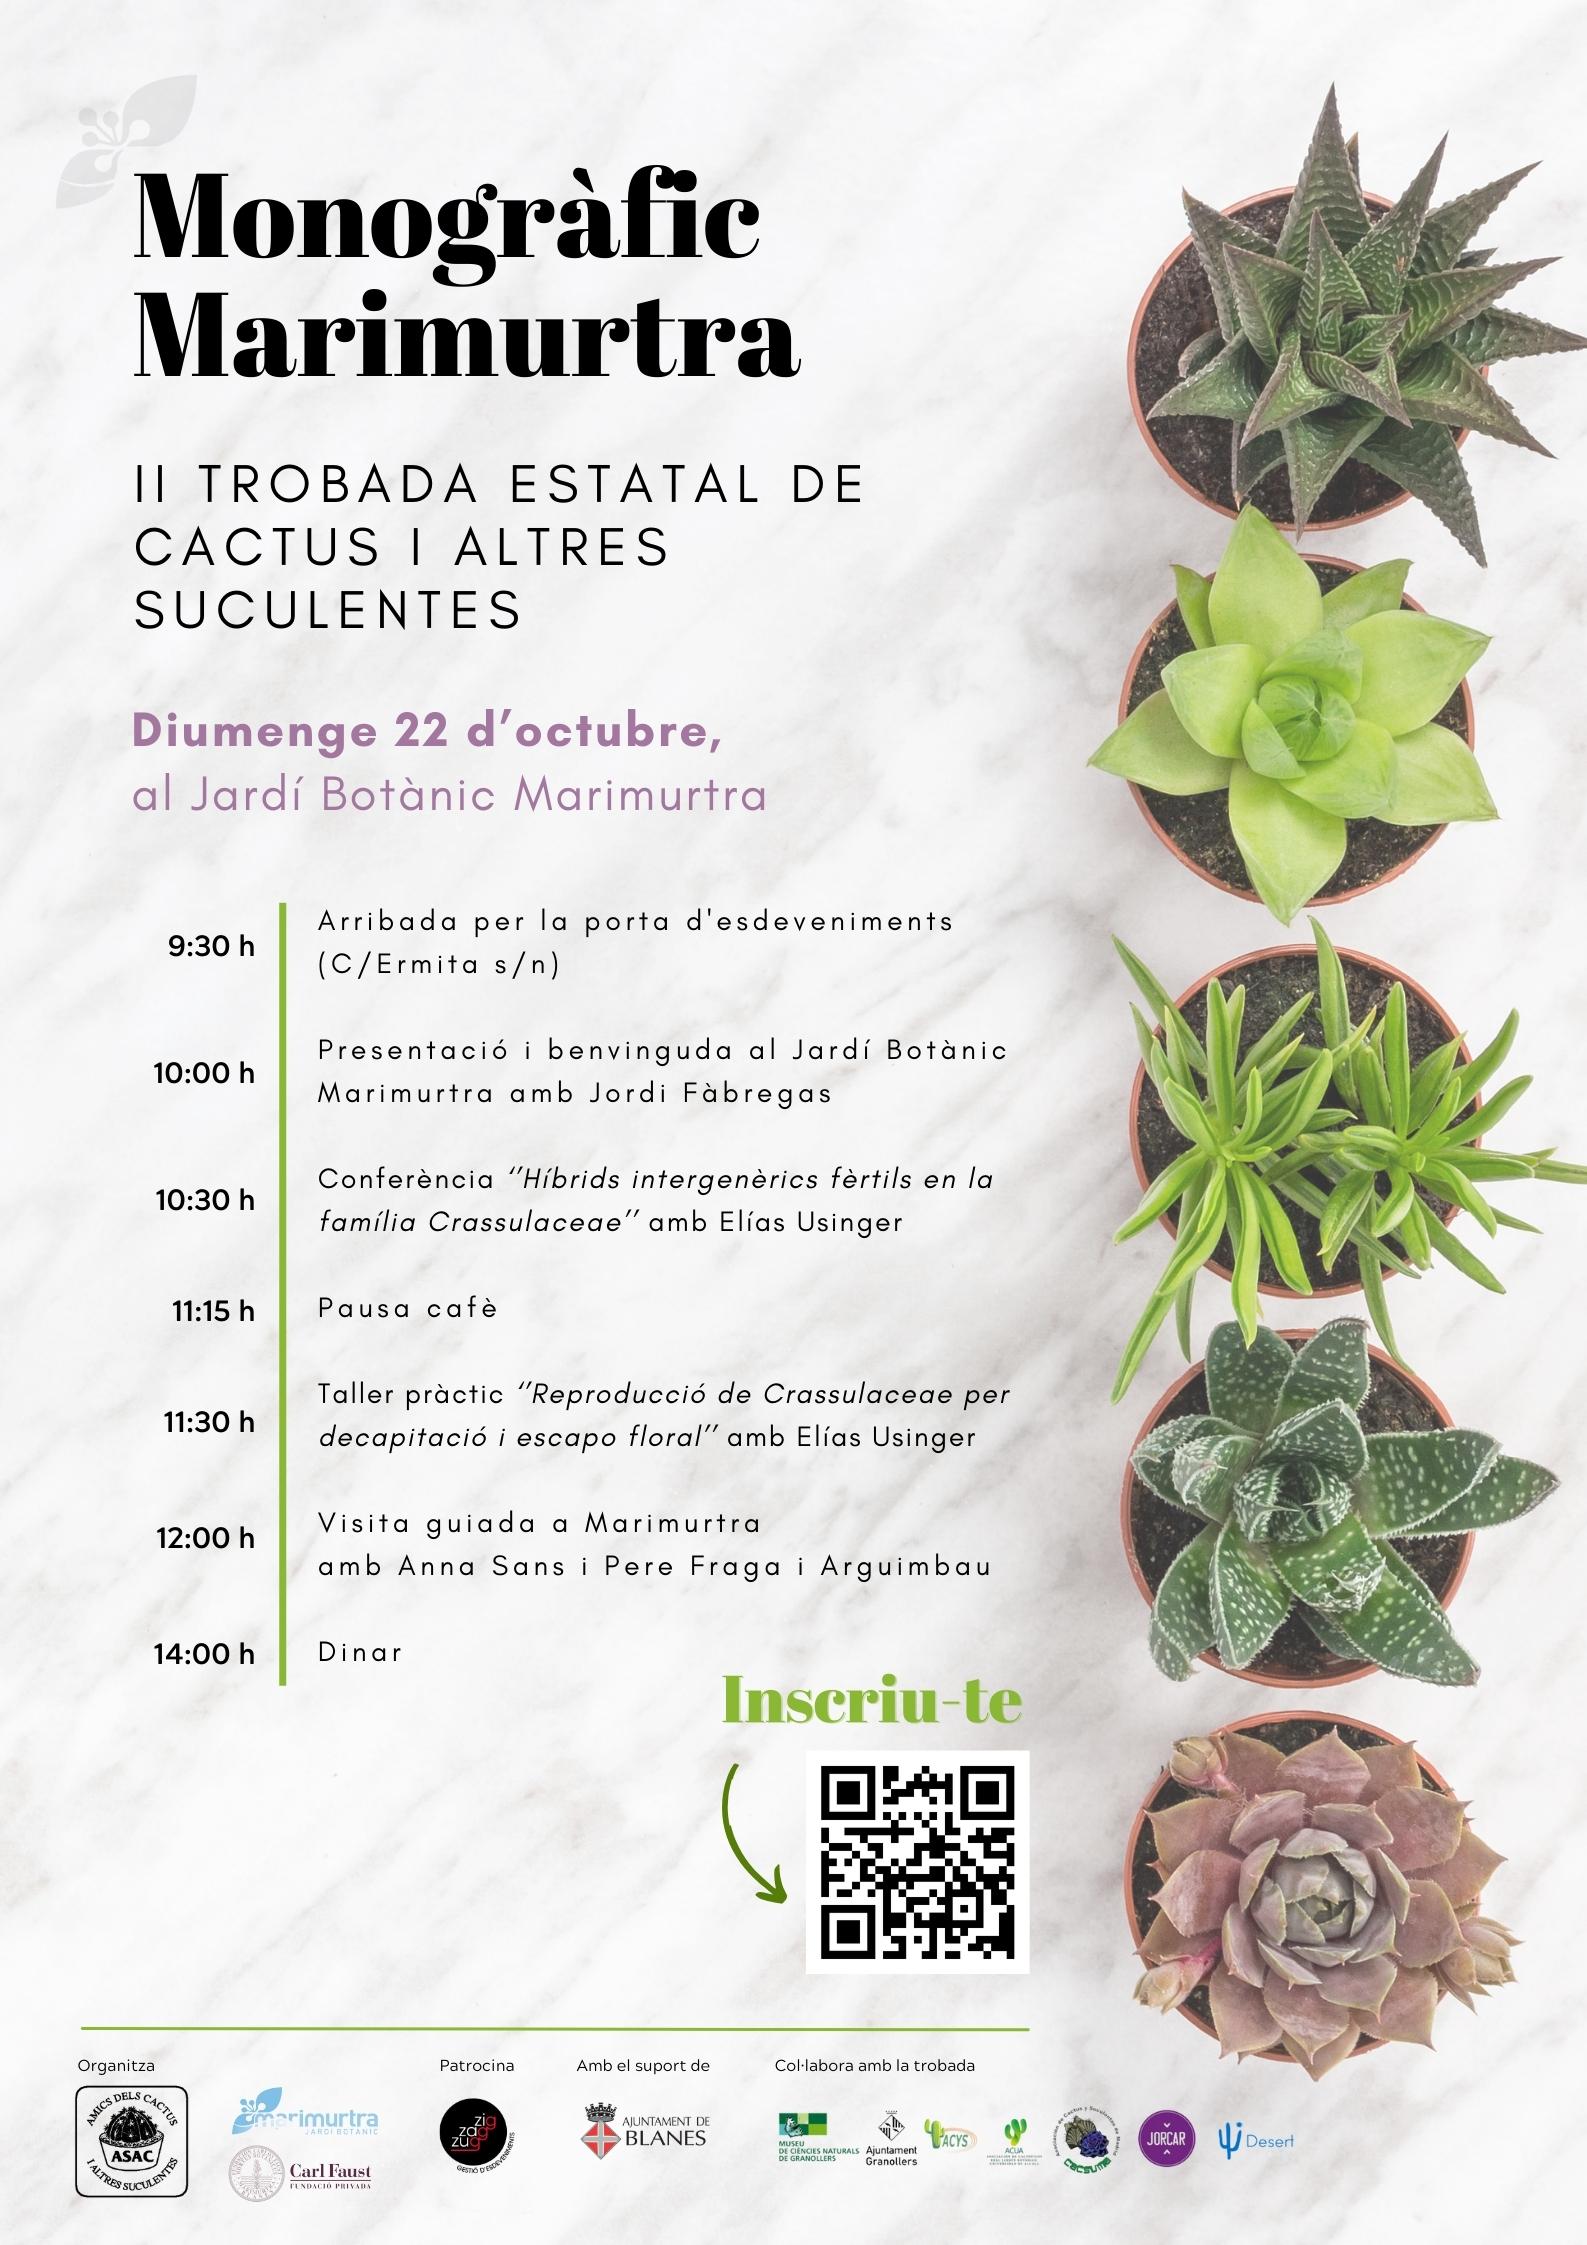 Monografic Trobada estatal de cactus i altres suculentes
Marimurtra ASAC